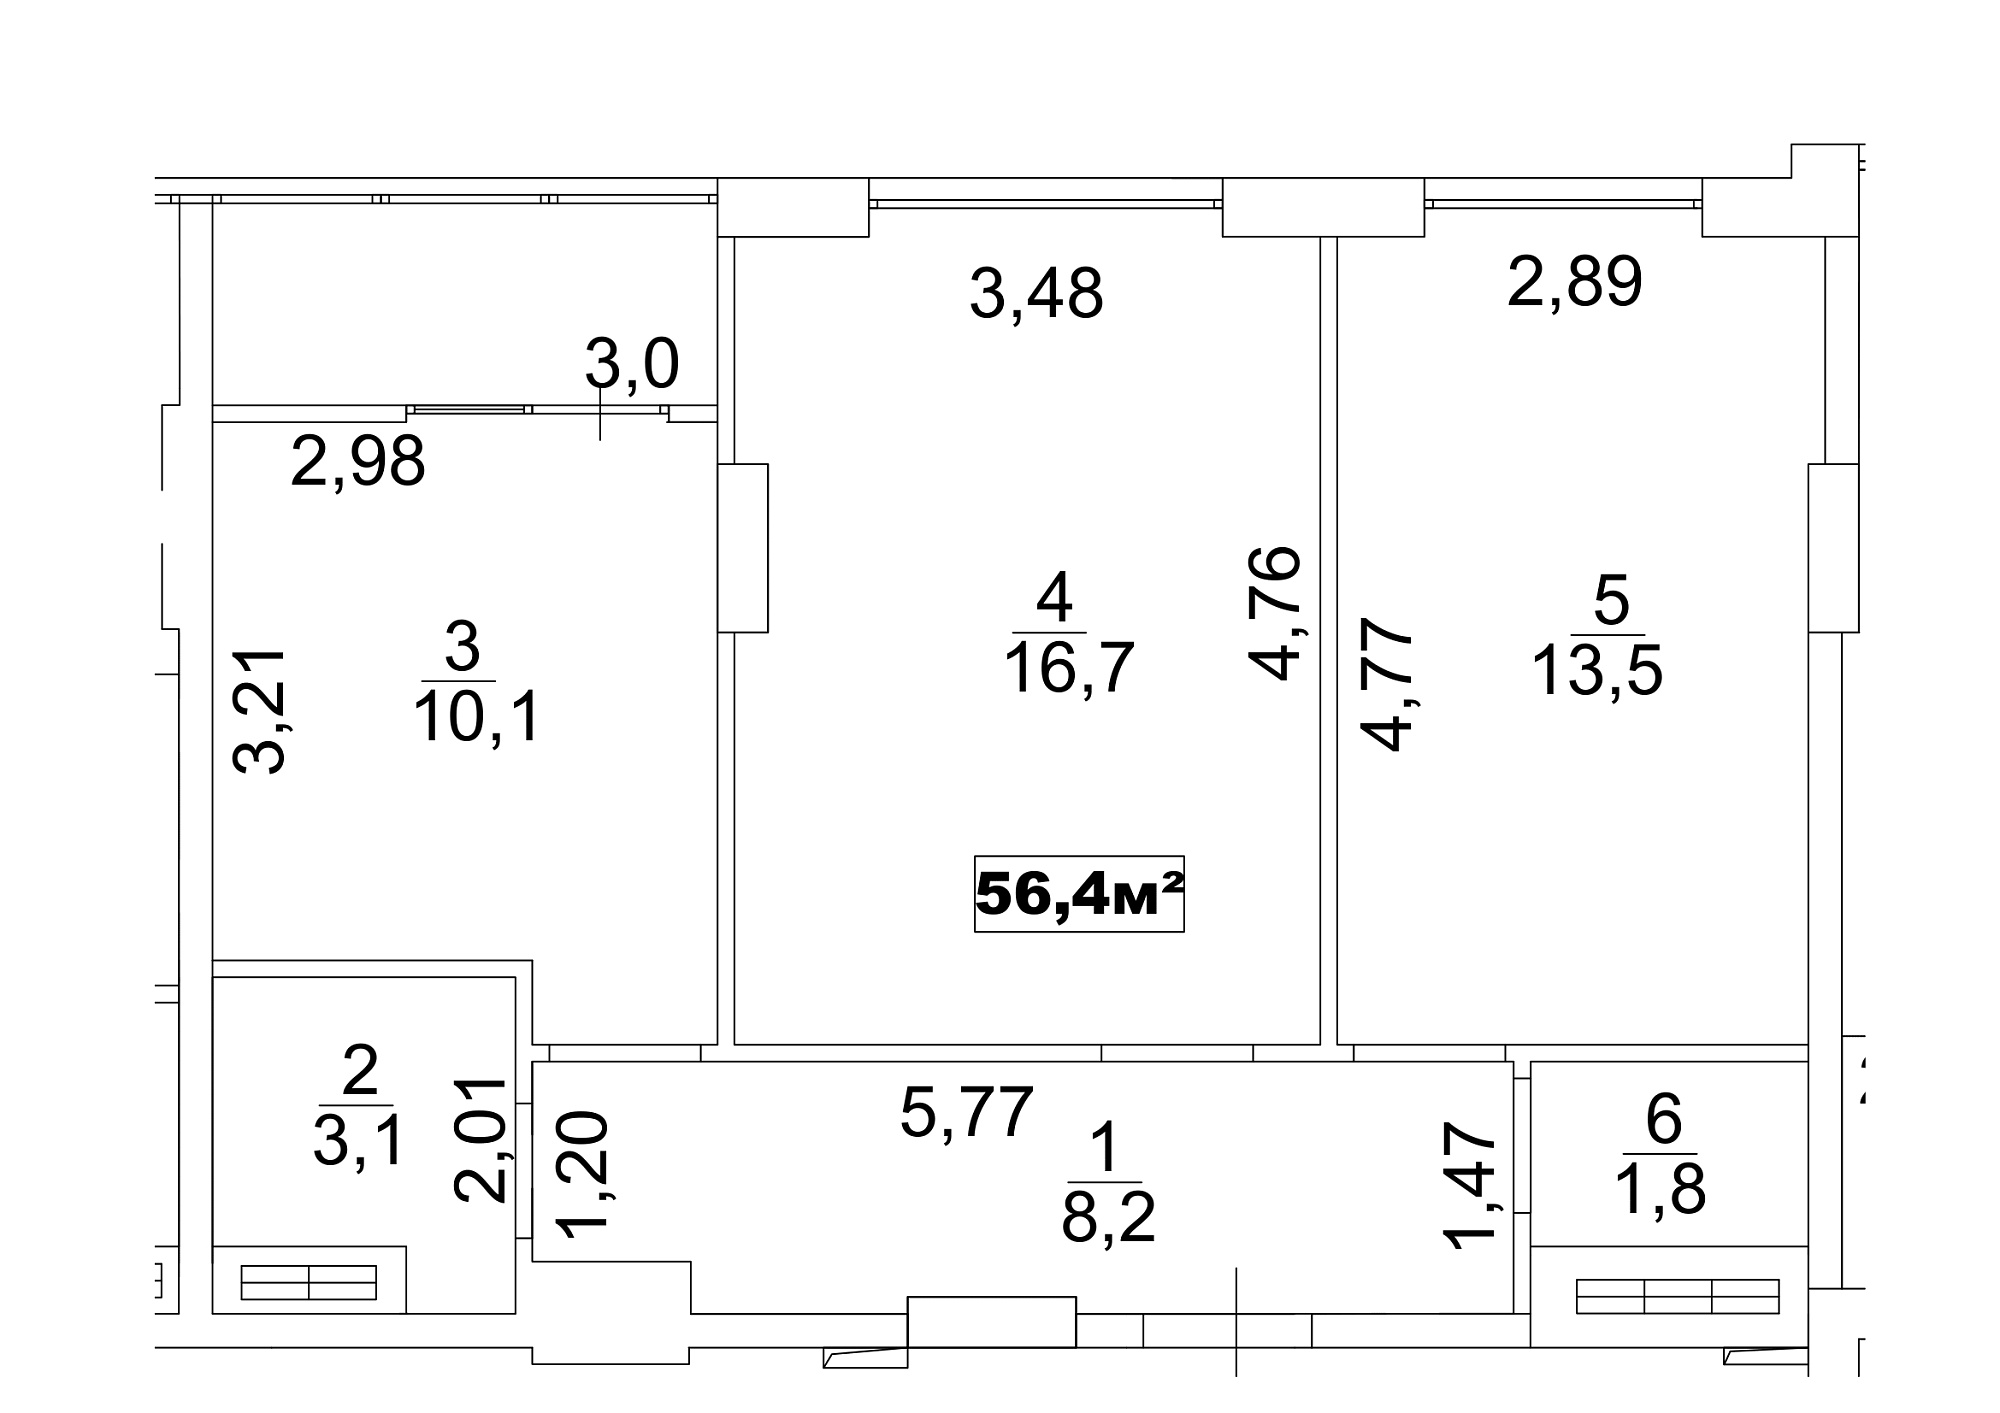 Планировка 2-к квартира площей 56.4м2, AB-13-09/00073.